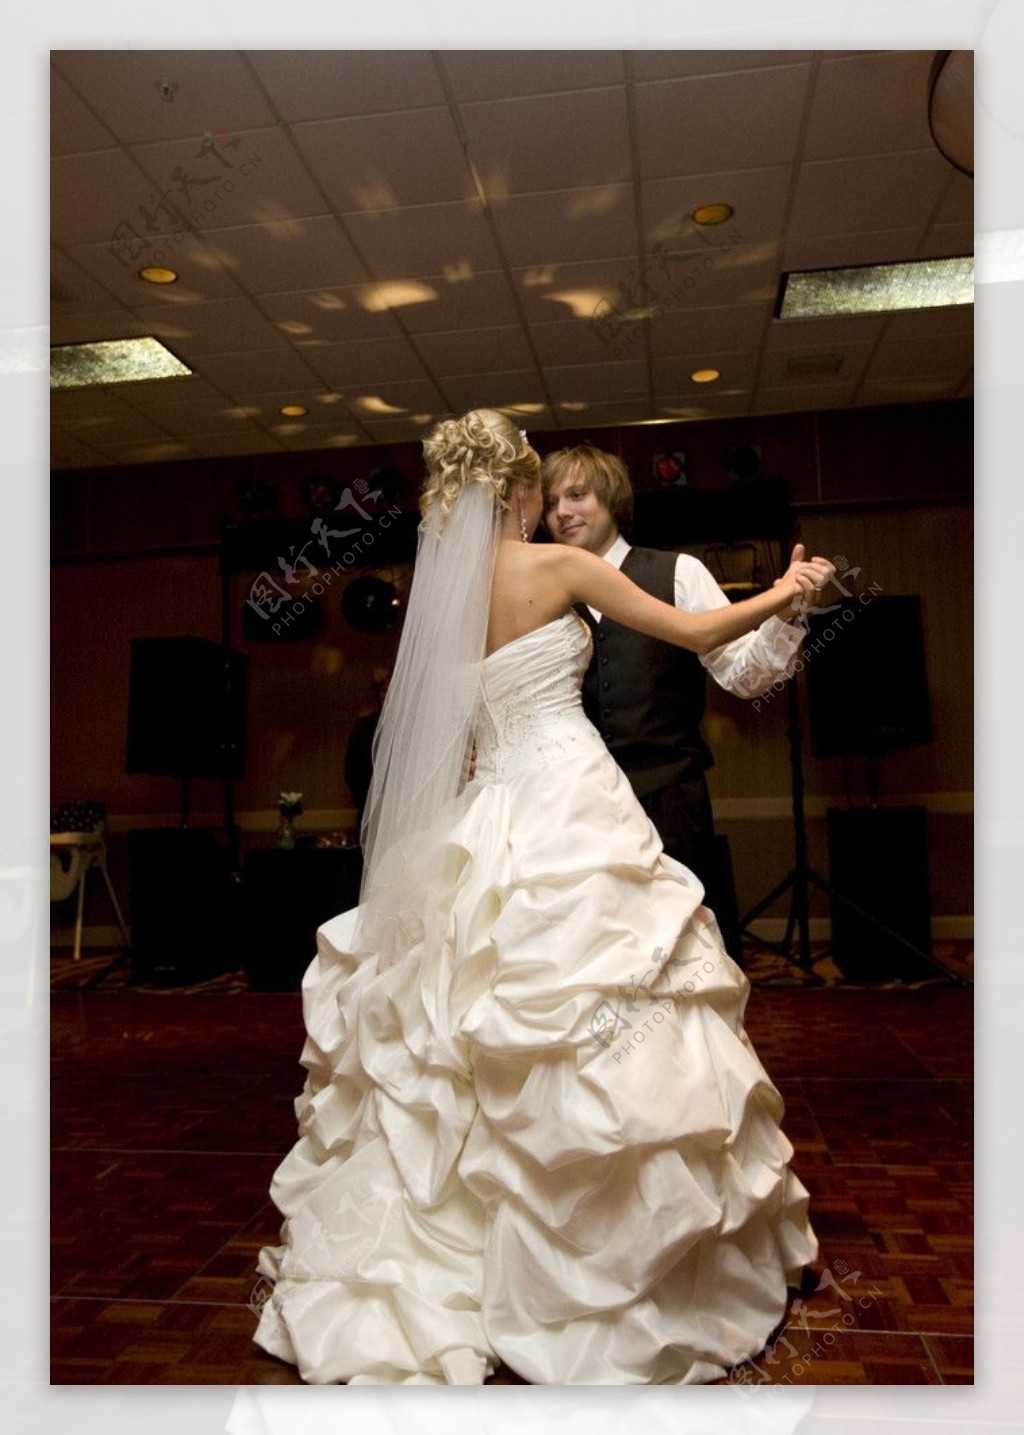 婚礼舞会拥抱跳舞交际舞新娘新郎图片